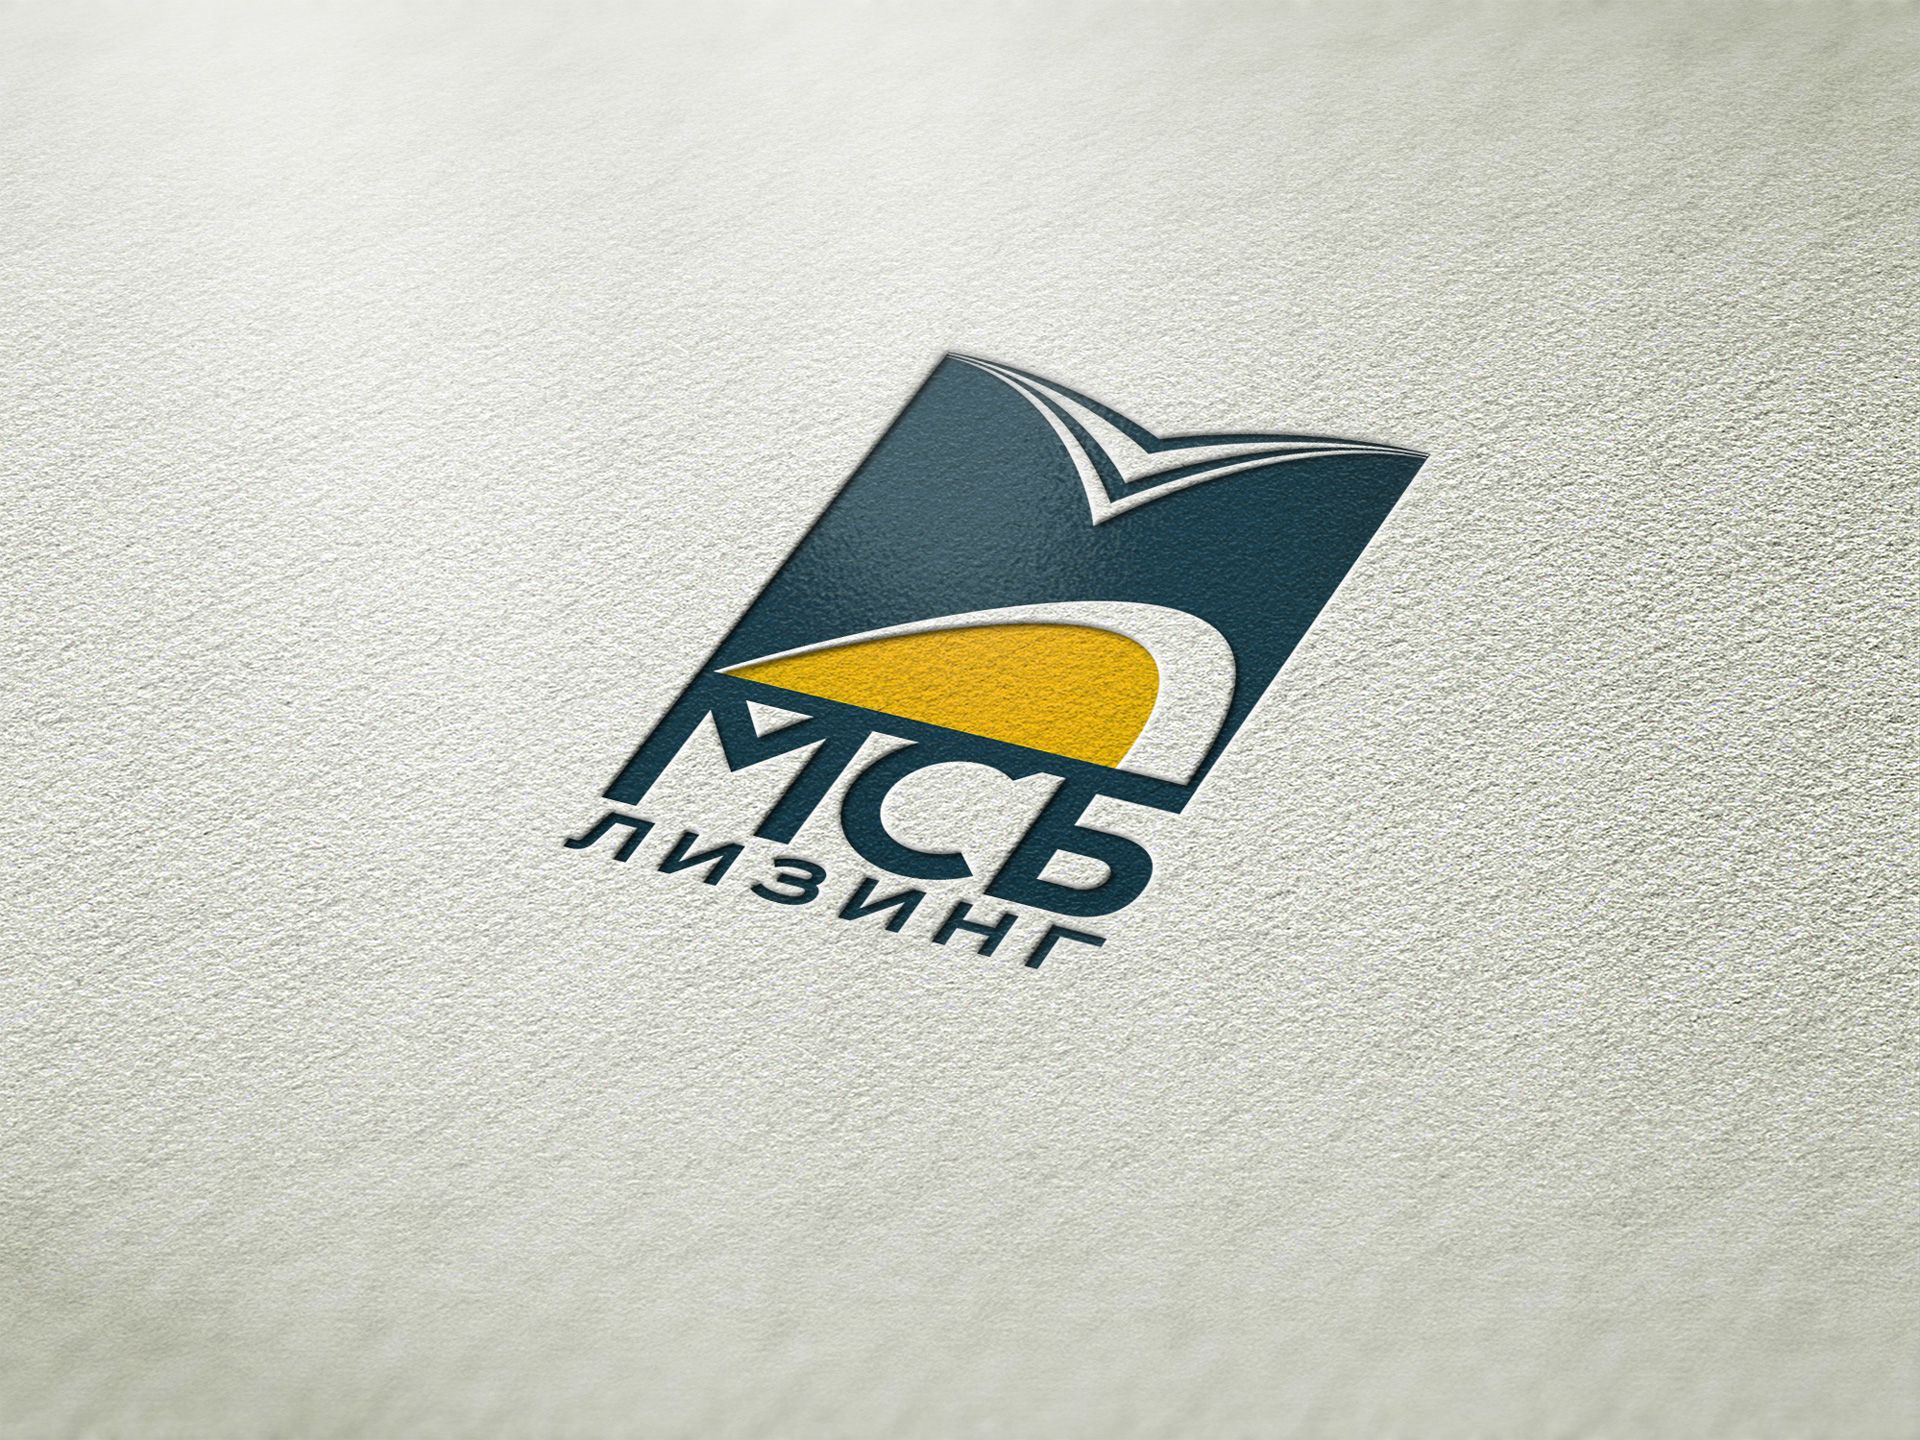 Логотип и фирстиль лизинговой компаниии - дизайнер Advokat72